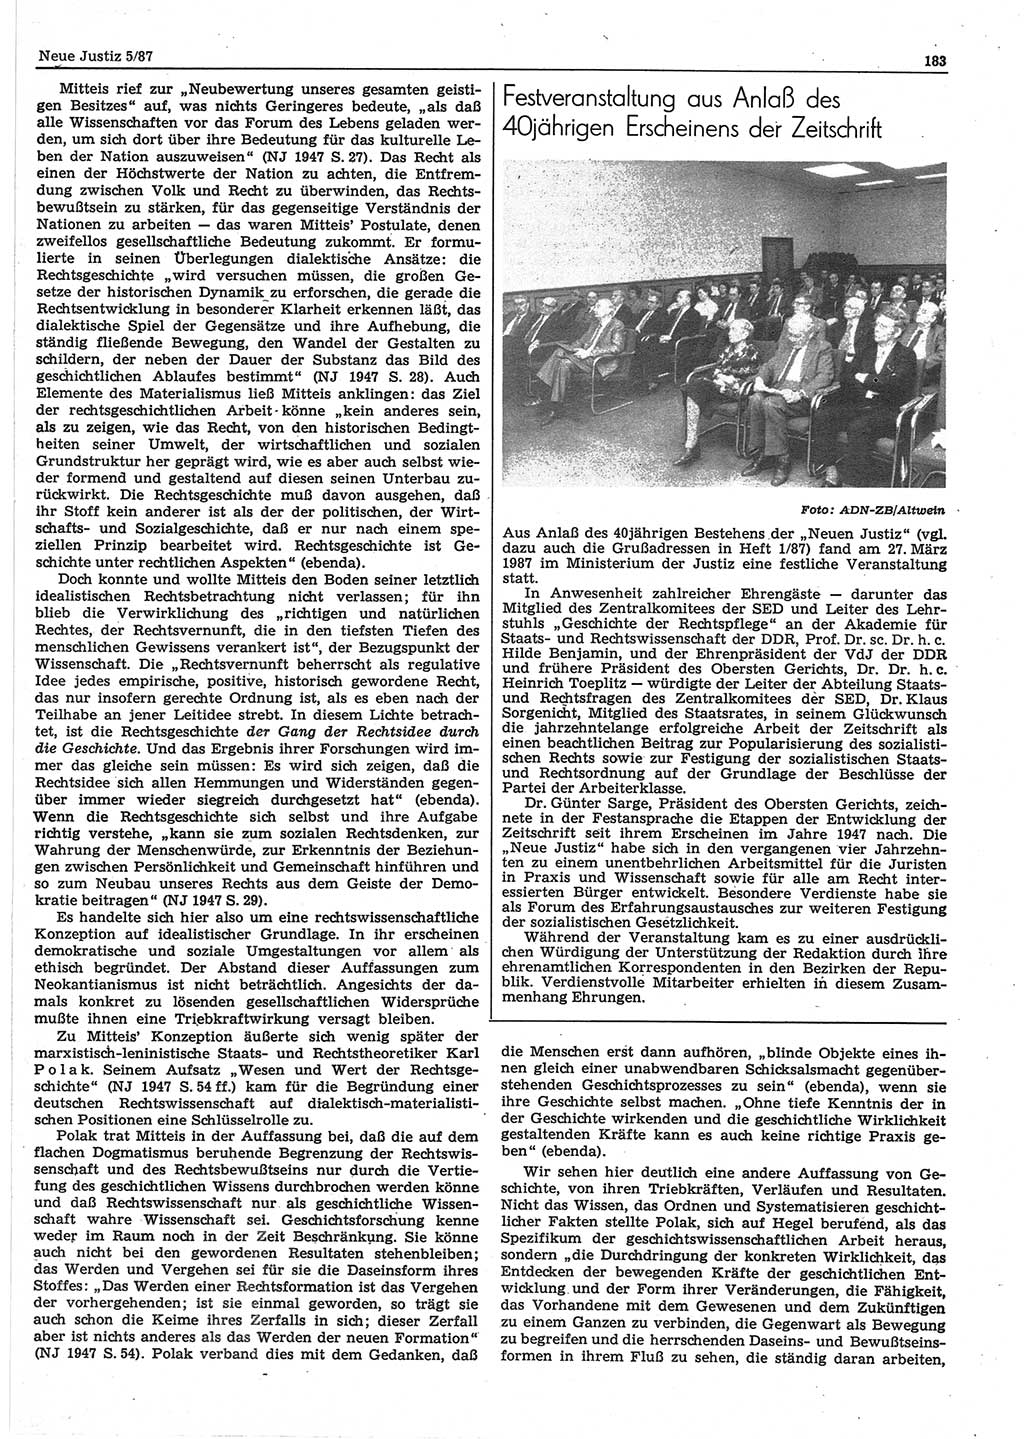 Neue Justiz (NJ), Zeitschrift für sozialistisches Recht und Gesetzlichkeit [Deutsche Demokratische Republik (DDR)], 41. Jahrgang 1987, Seite 183 (NJ DDR 1987, S. 183)